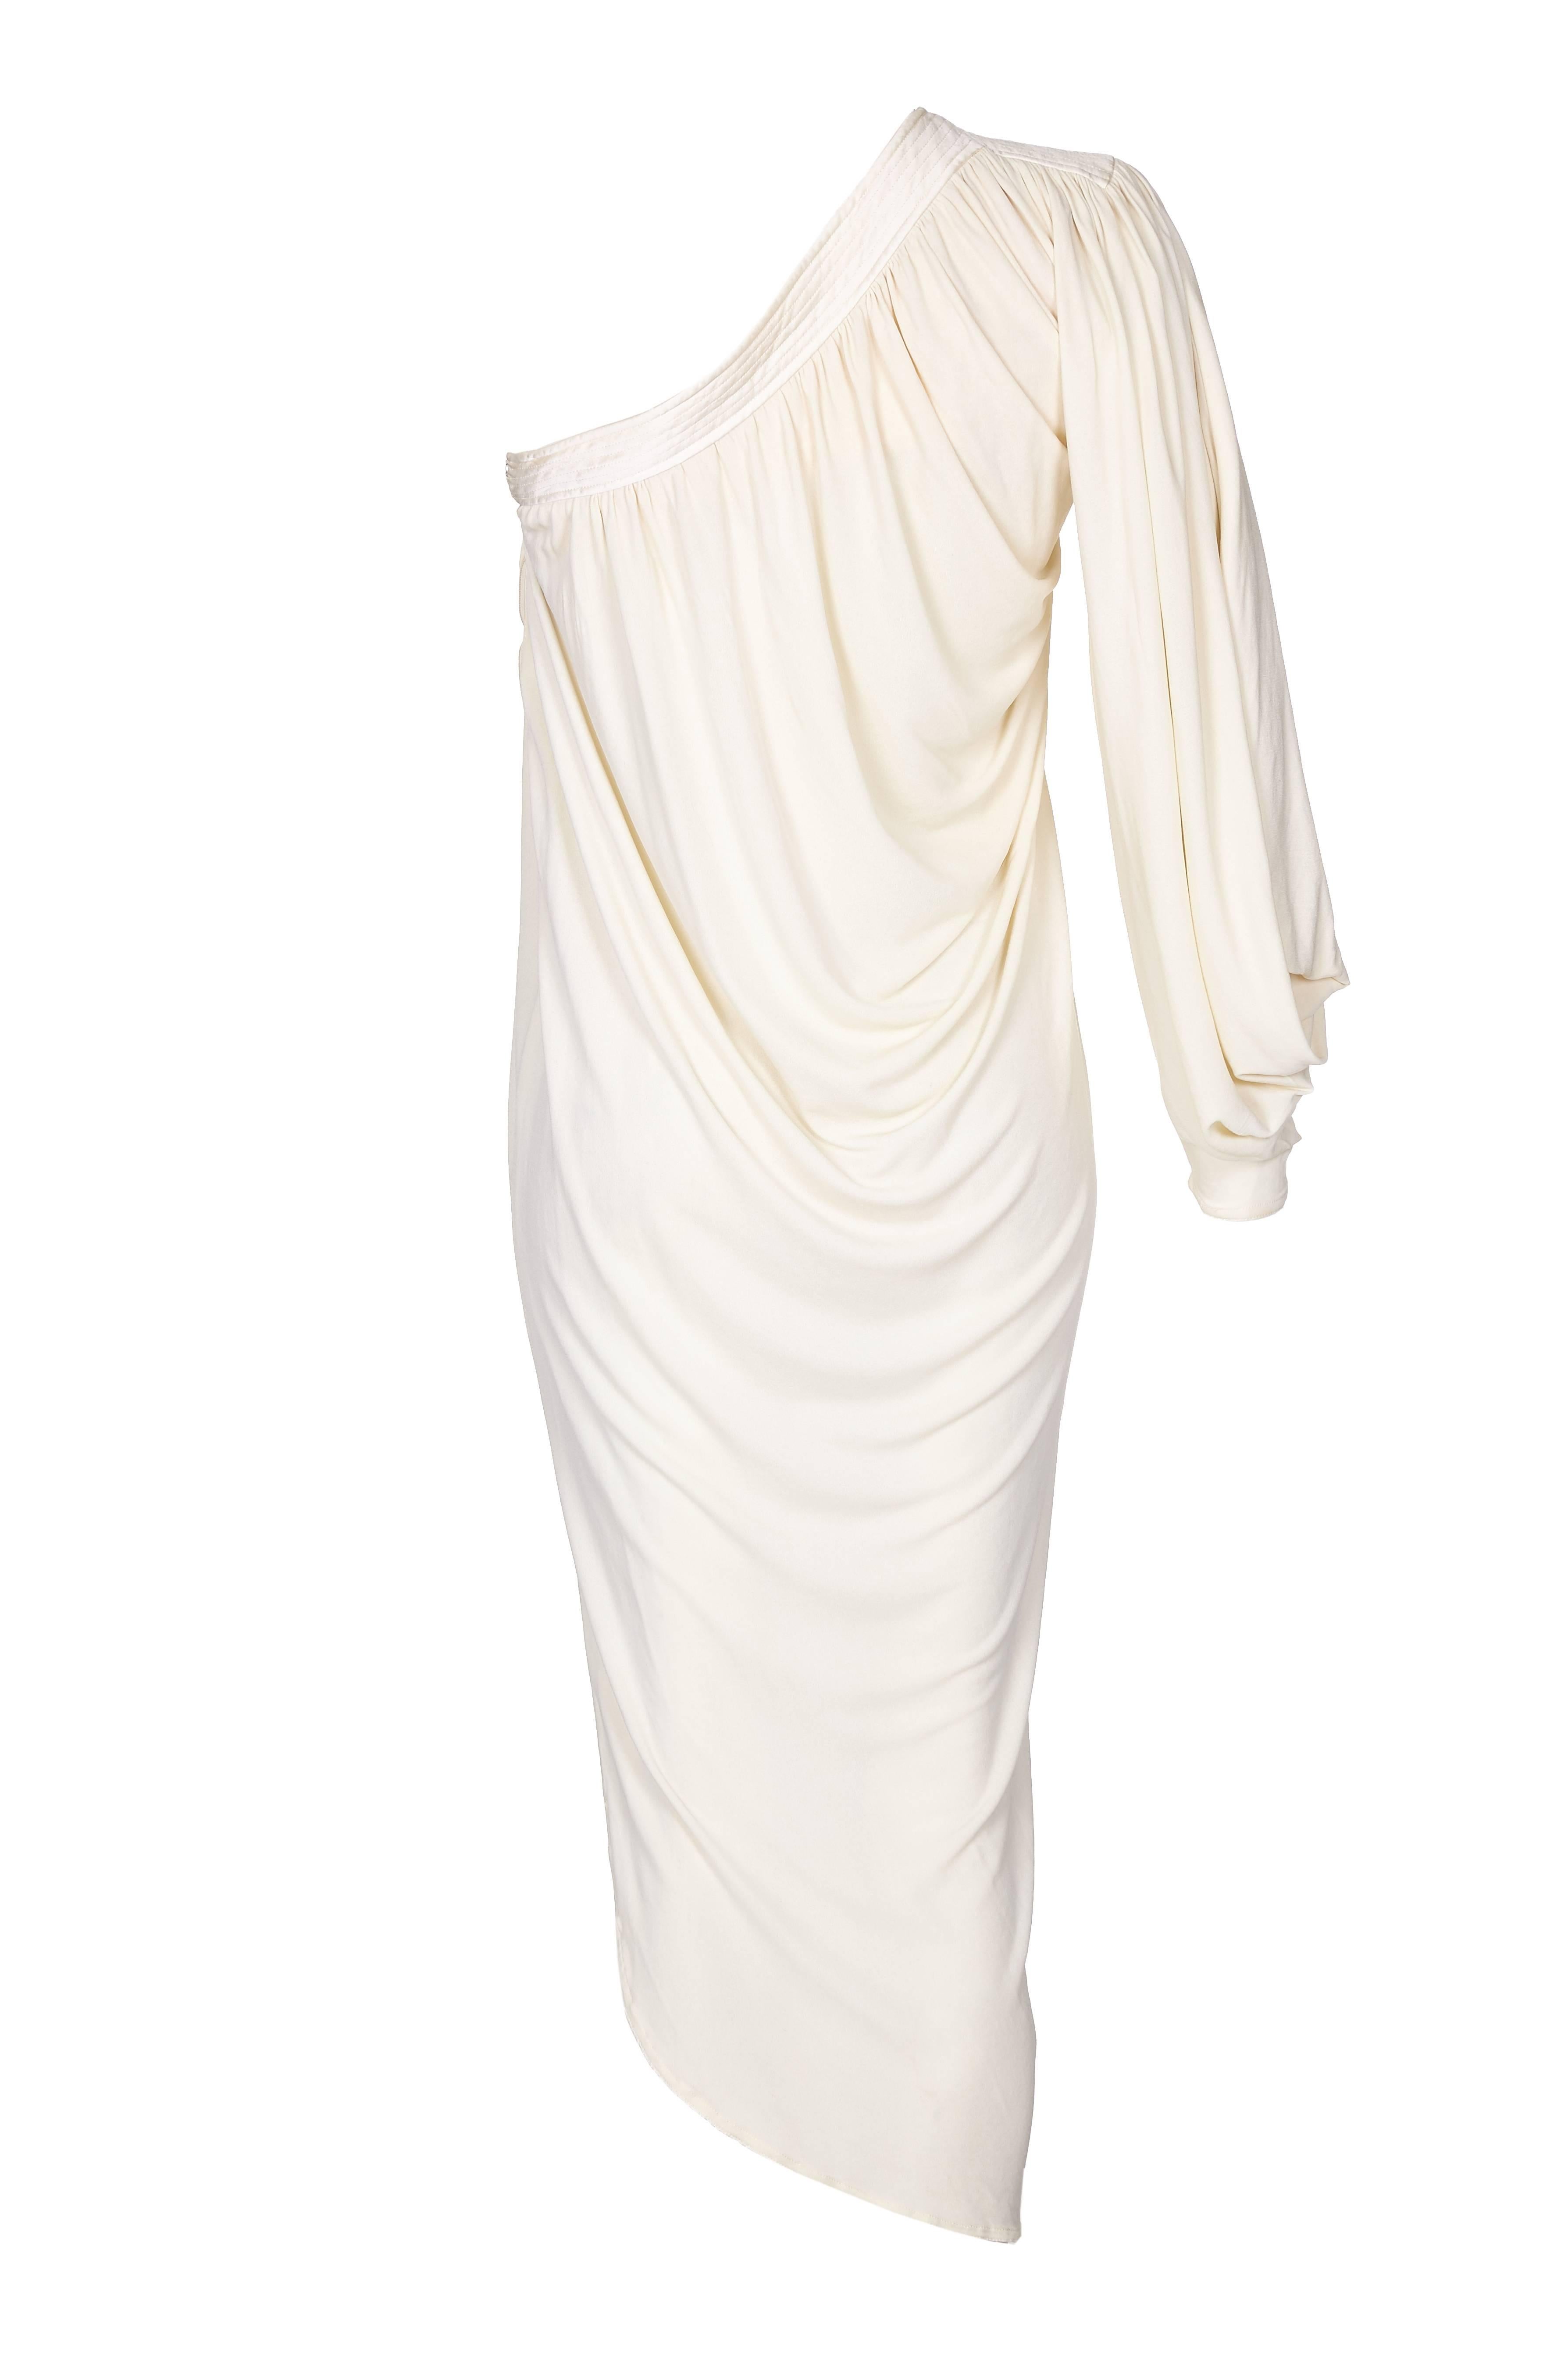 Robe asymétrique en soie/jersey crème de Yuki couture des années 1970. Drapée dans un style grec, cette robe est vraiment spéciale et serait parfaite pour n'importe quelle occasion. Il s'agit d'une pièce de sa collection principale et non de sa